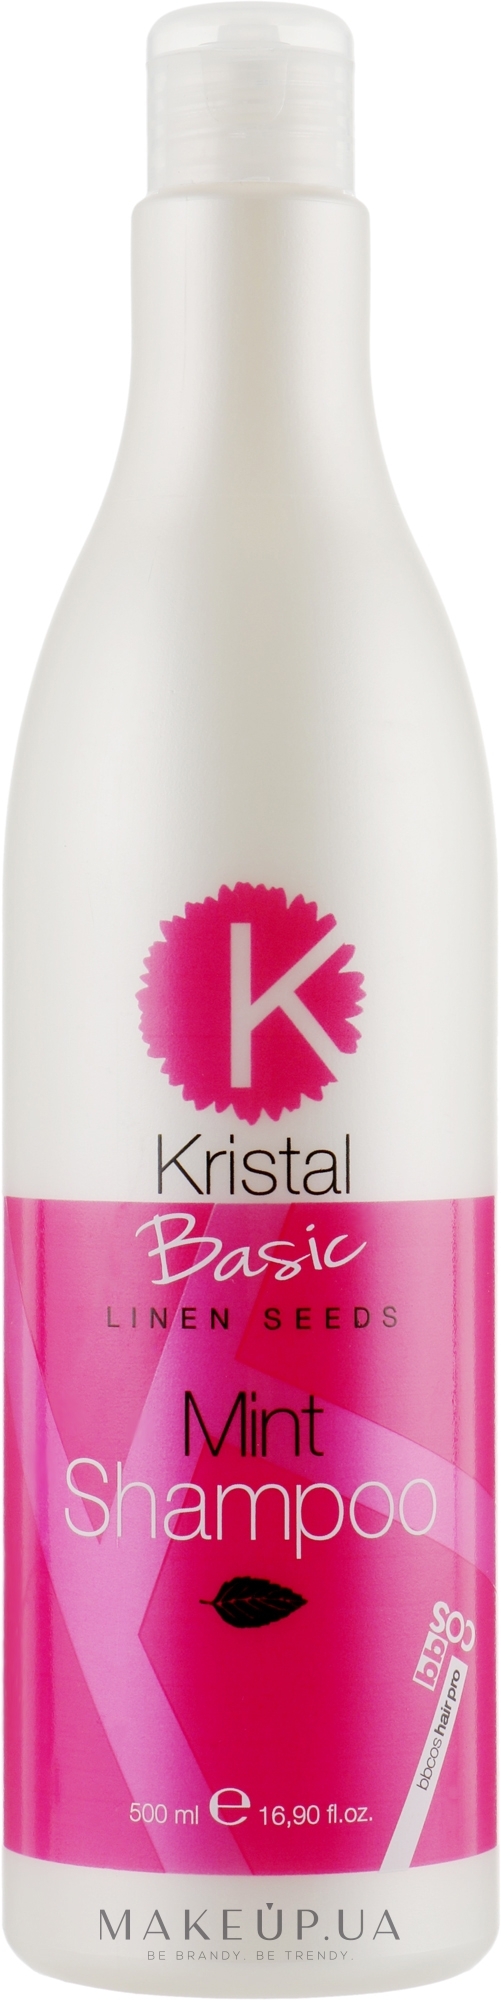 М'ятний шампунь для волосся - BBcos Kristal Basic Mint Shampoo — фото 500ml